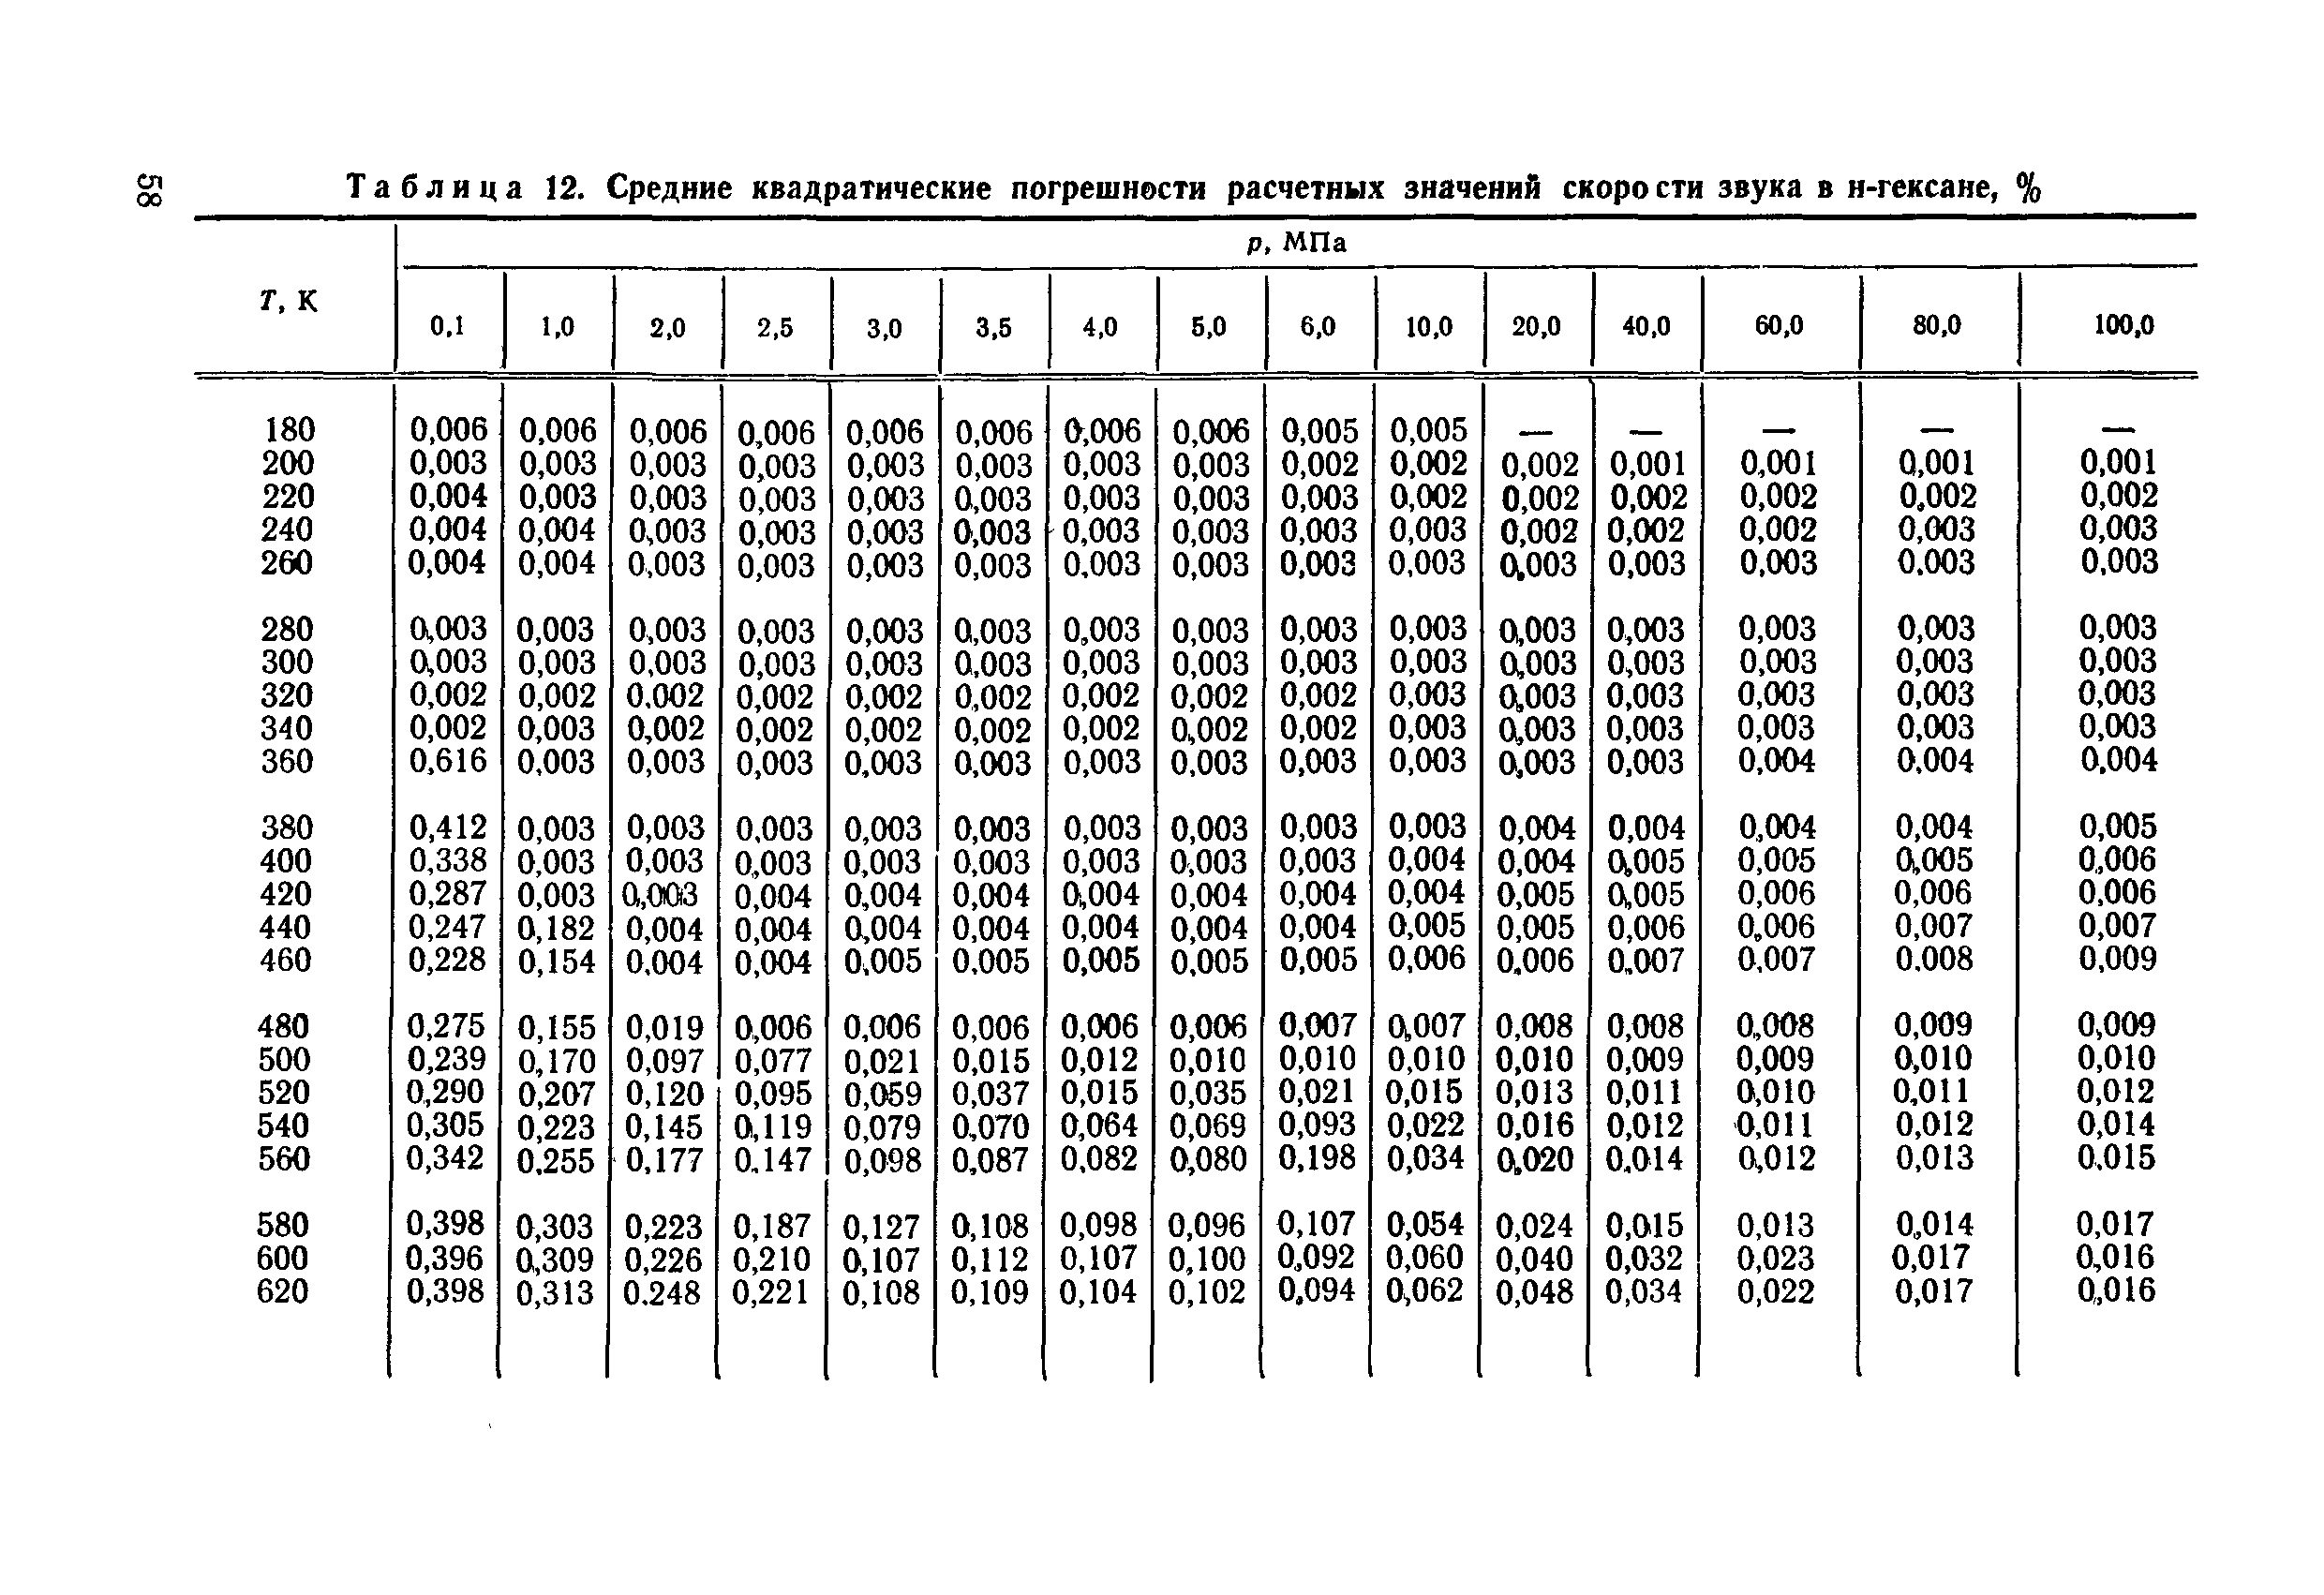 54 32 8 14 7. Плотность гексана. Плотность гексана таблица. Таблица ГСССД 154-91. Теплоемкость гексана.